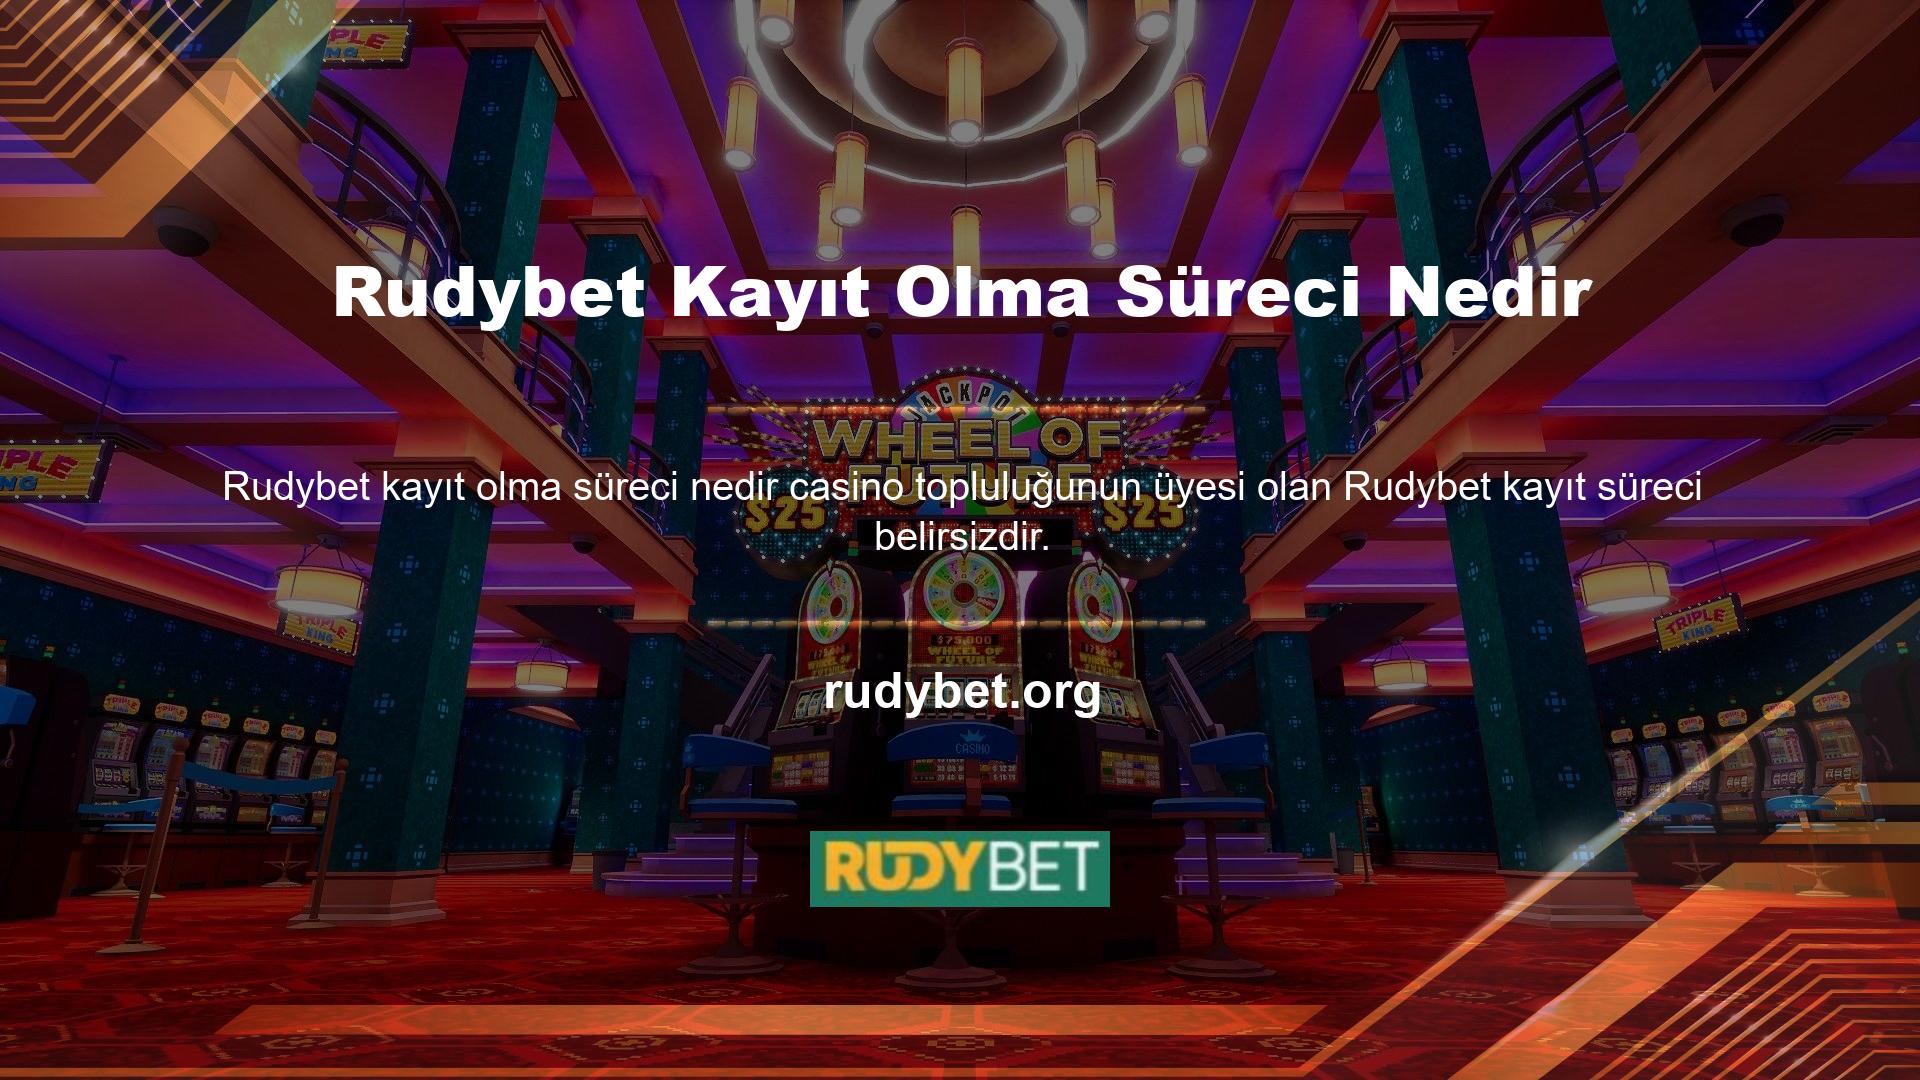 Rudybet casino tutkunu olarak nasıl kaydolacağınız aşağıda açıklanmıştır